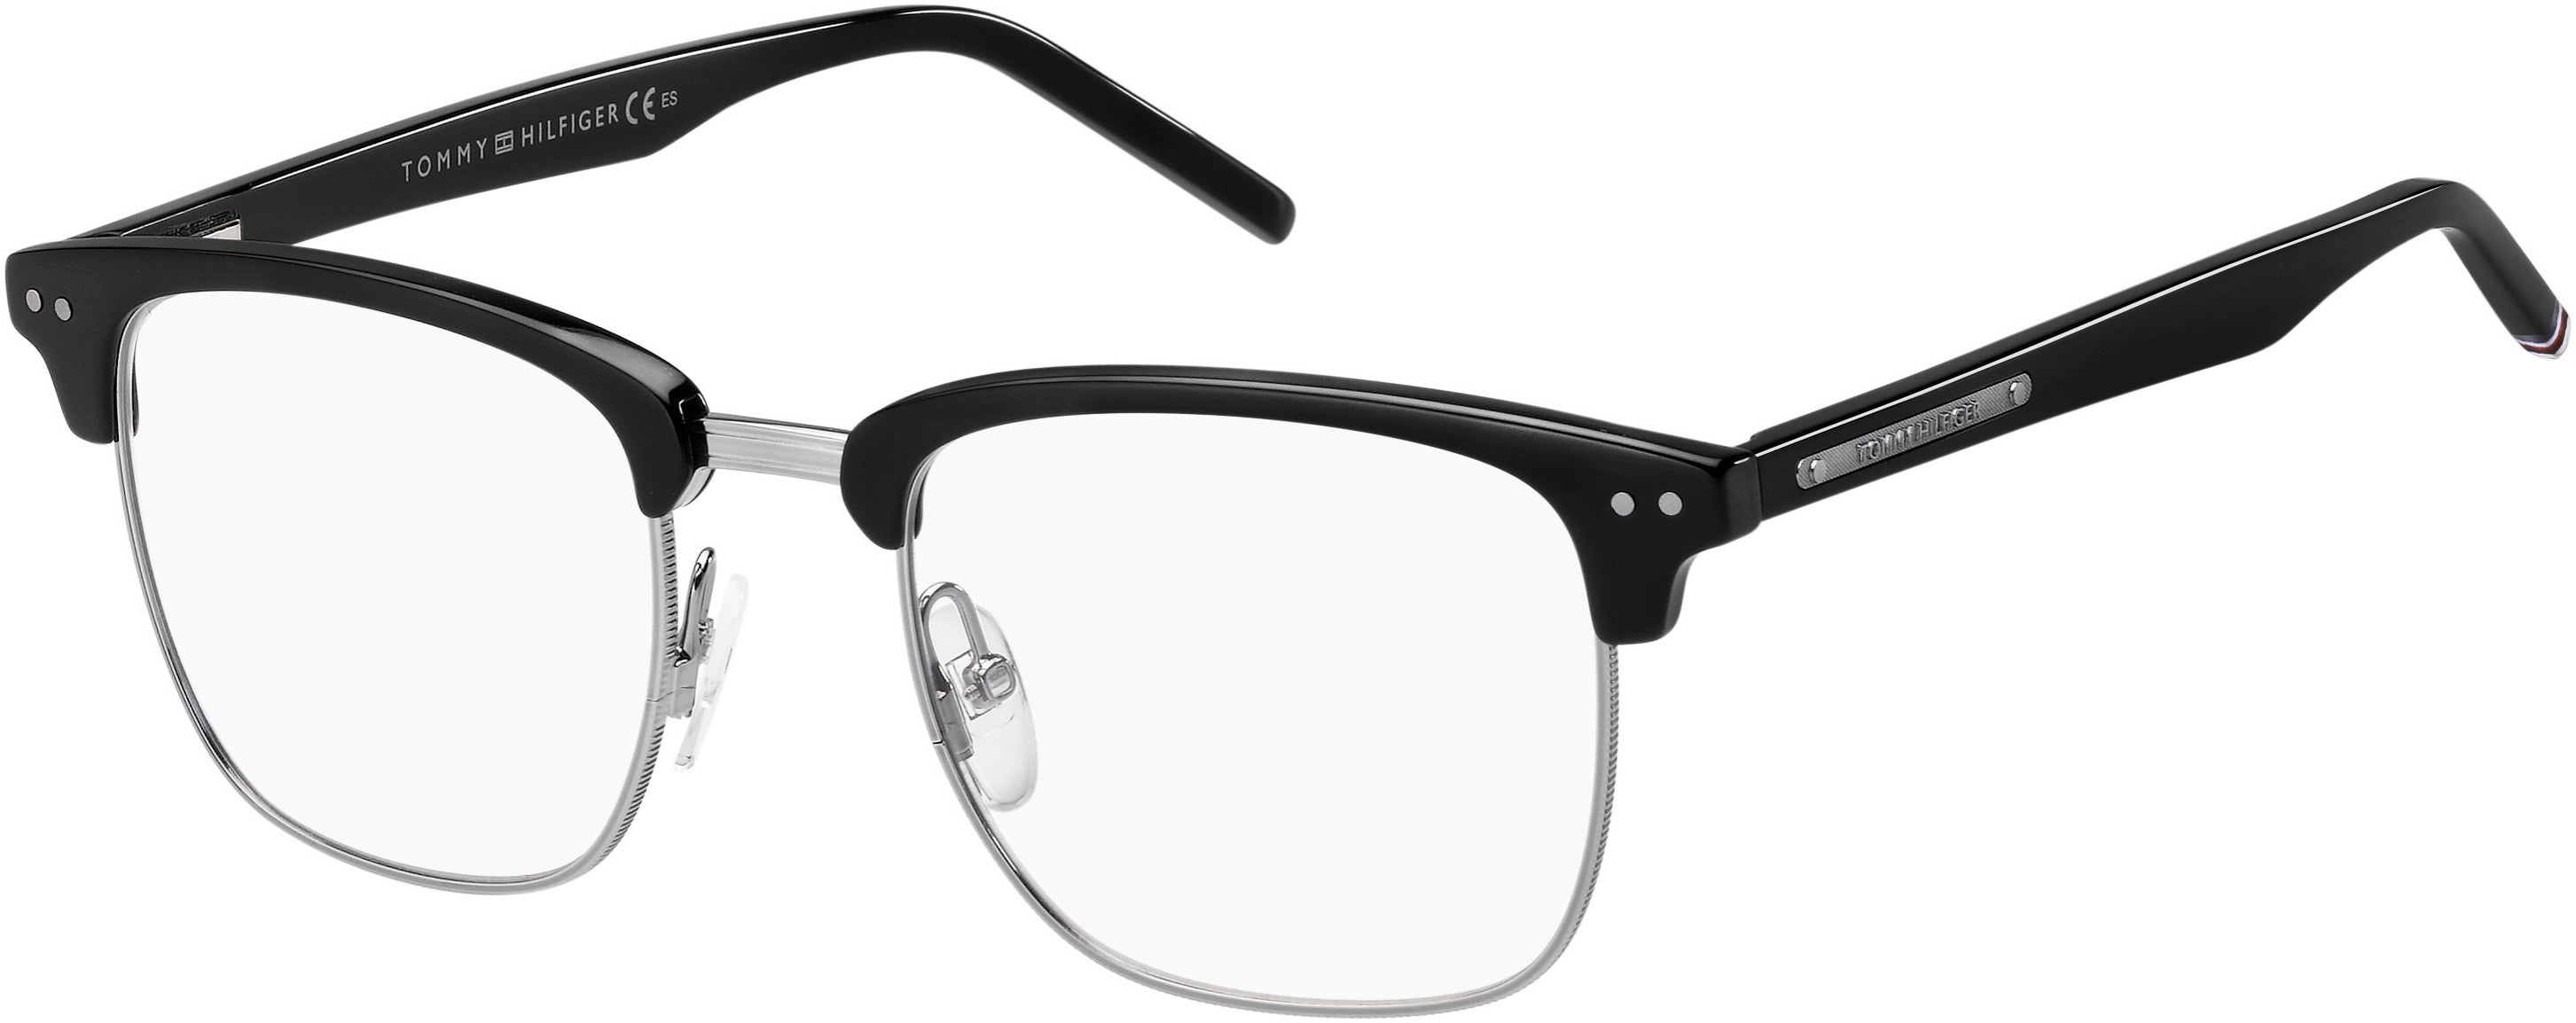 Tommy Hilfiger T. Hilfiger 1730 Rectangular Eyeglasses 0807-0807  Black (00 Demo Lens)